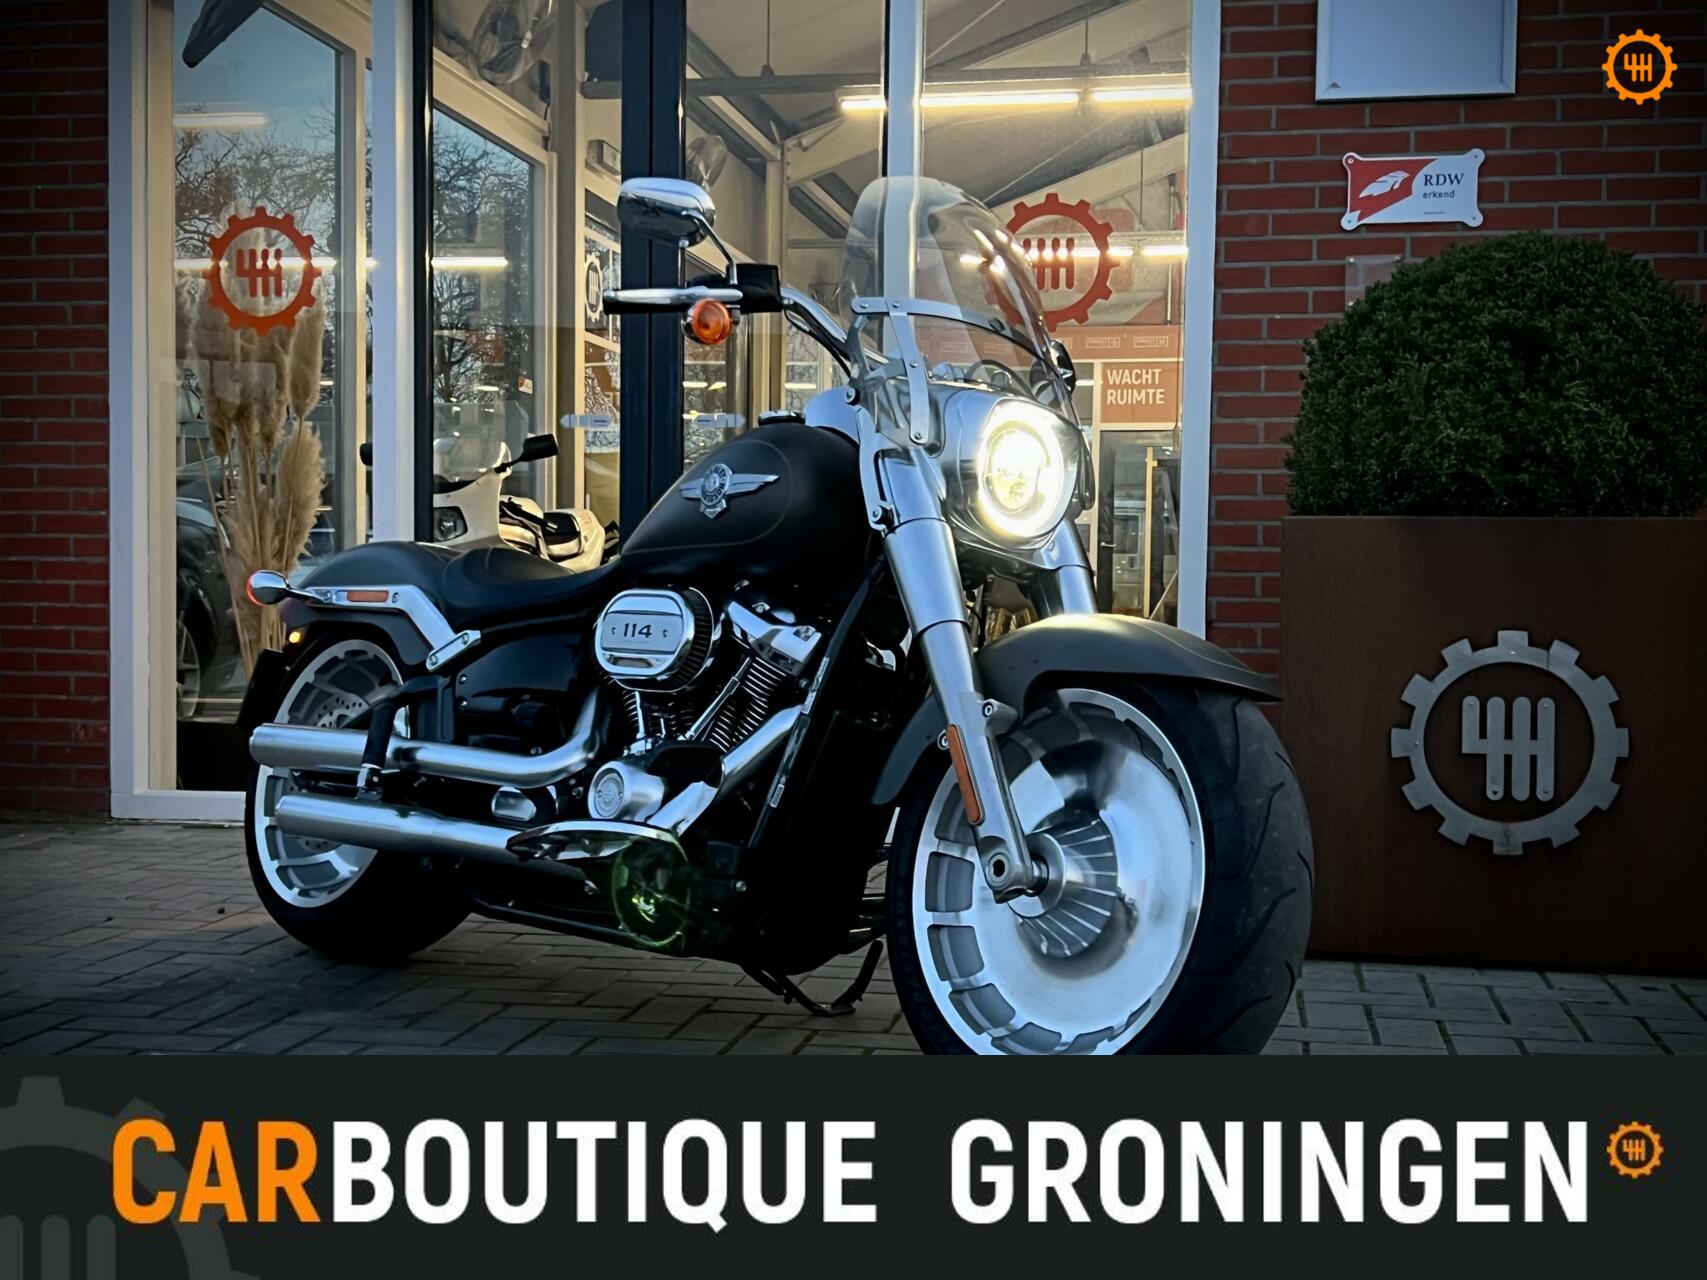 Caroutlet Groningen - Harley Davidson 114 FLFBS Softail FATBOY | 3100KM | VANCE & HINES | 2019